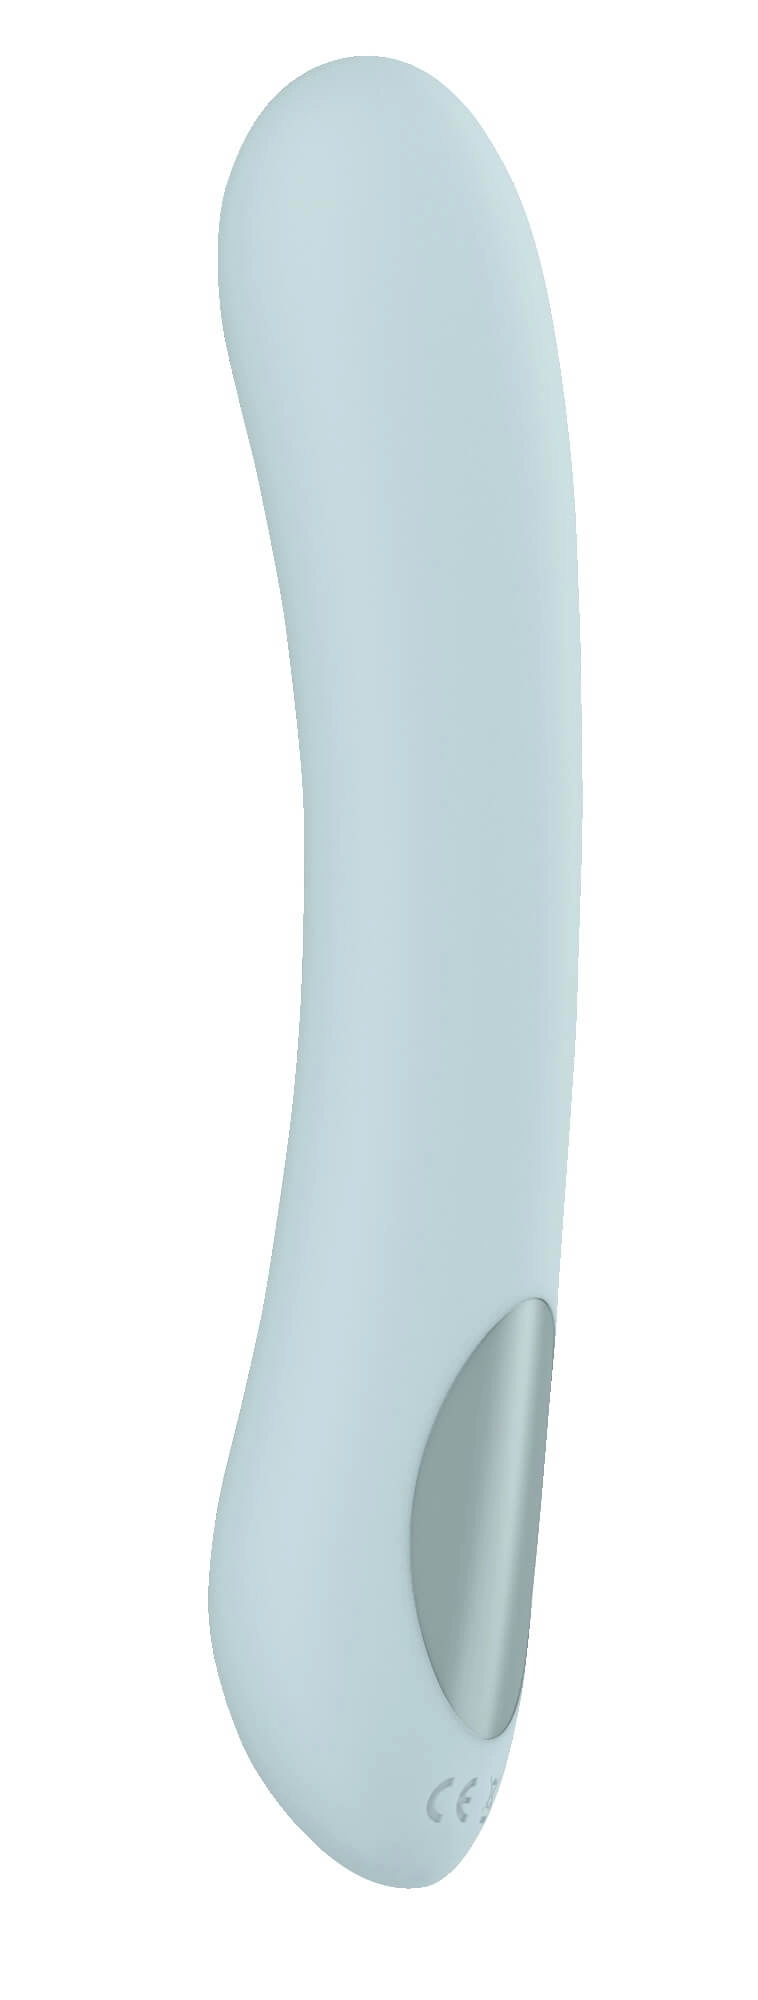 Kiiroo Pearl 2 - akkus interaktív, vízálló G-pont vibrátor (zöld)